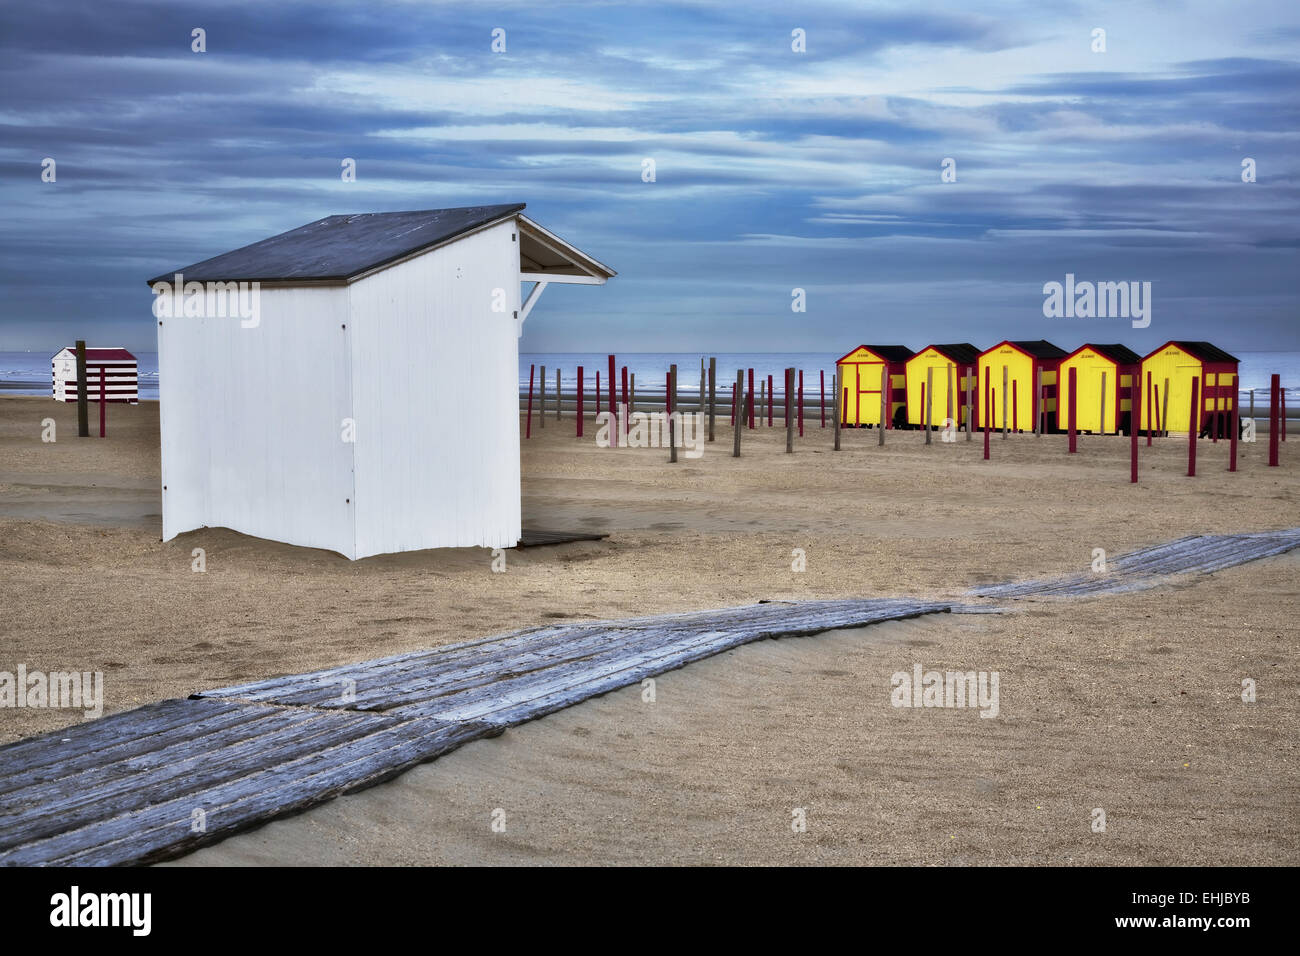 Cabines de plage, De Panne, Flandre occidentale, Belgique Banque D'Images